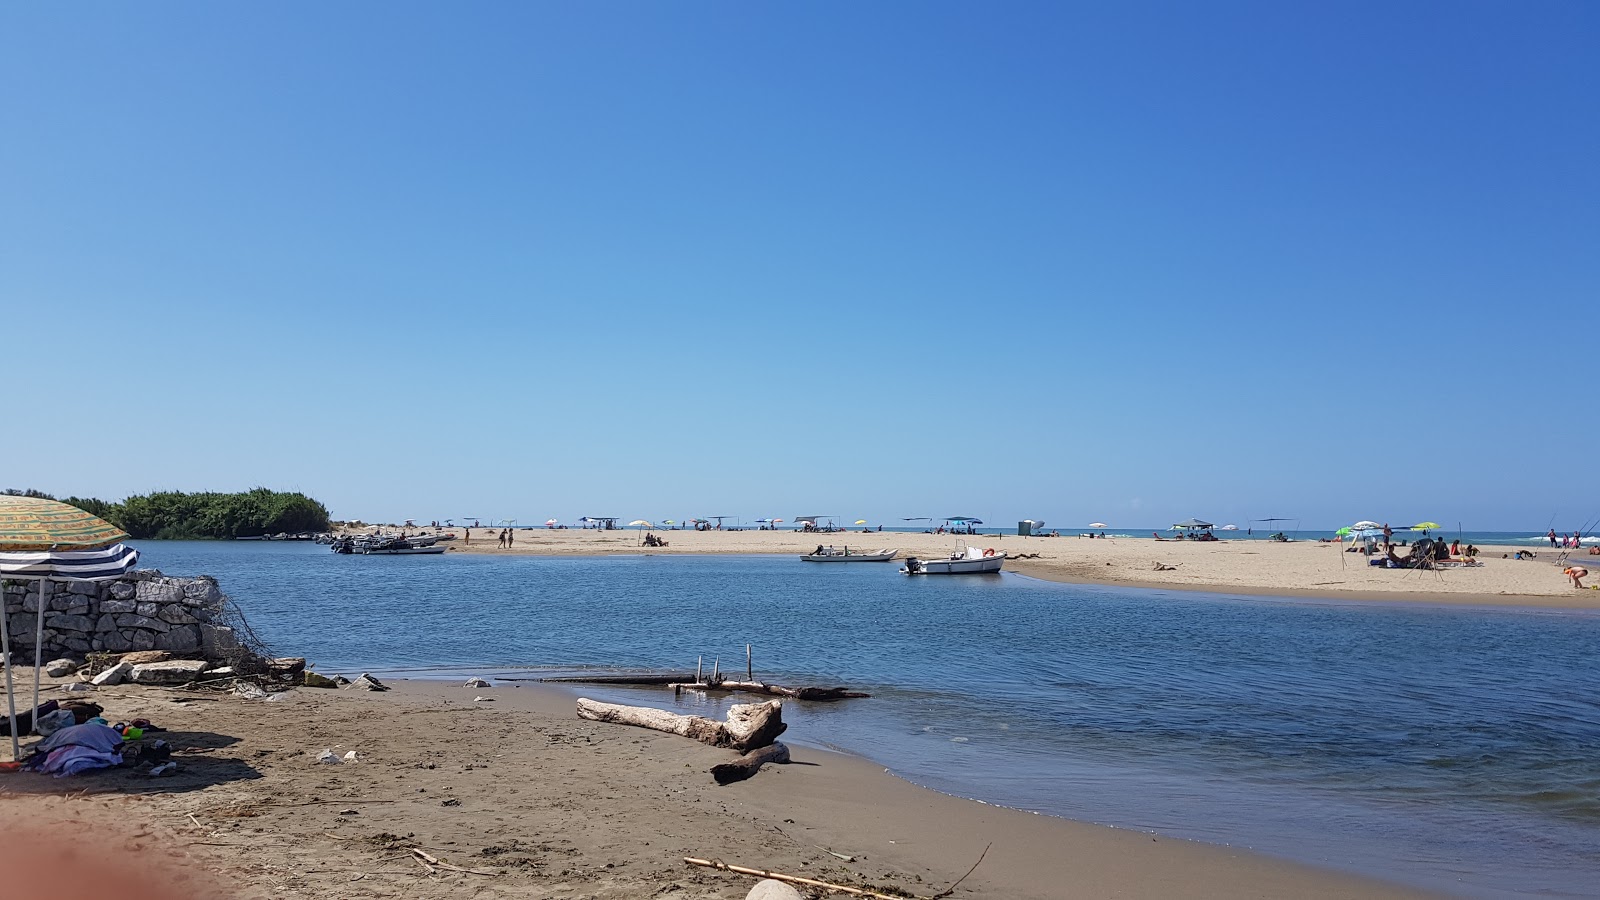 Zdjęcie Serchio beach z powierzchnią niebieska woda